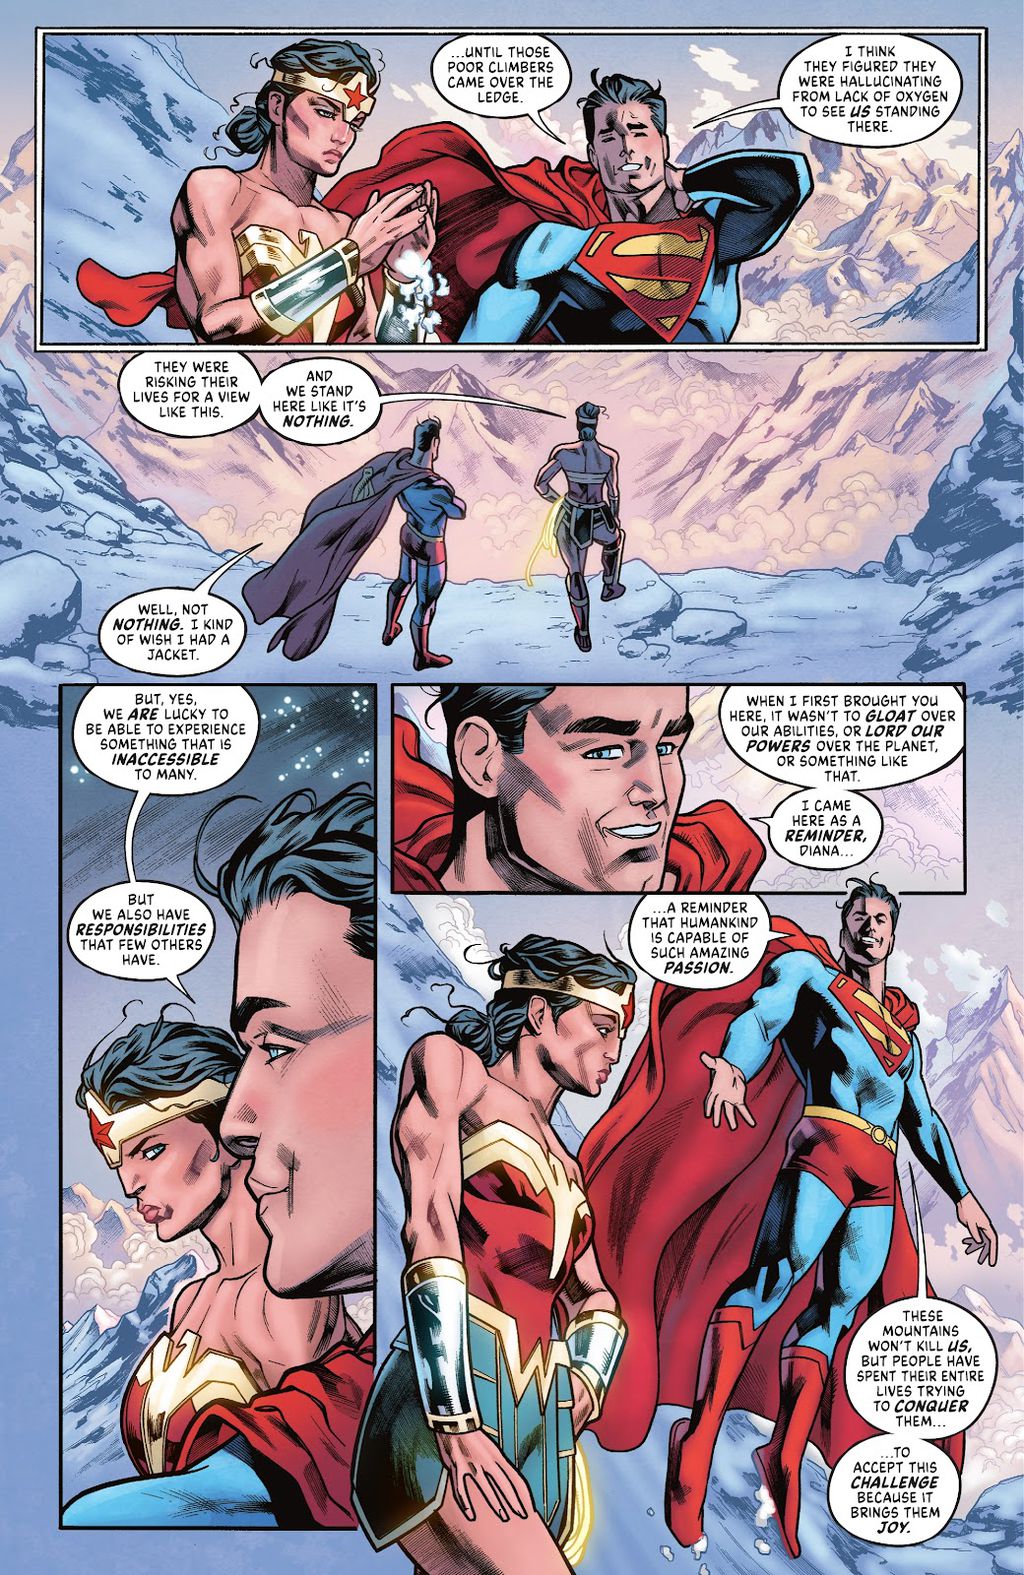 Cena de Wonder Woman Evolution nº 1 (Imagem: Reprodução/DC)